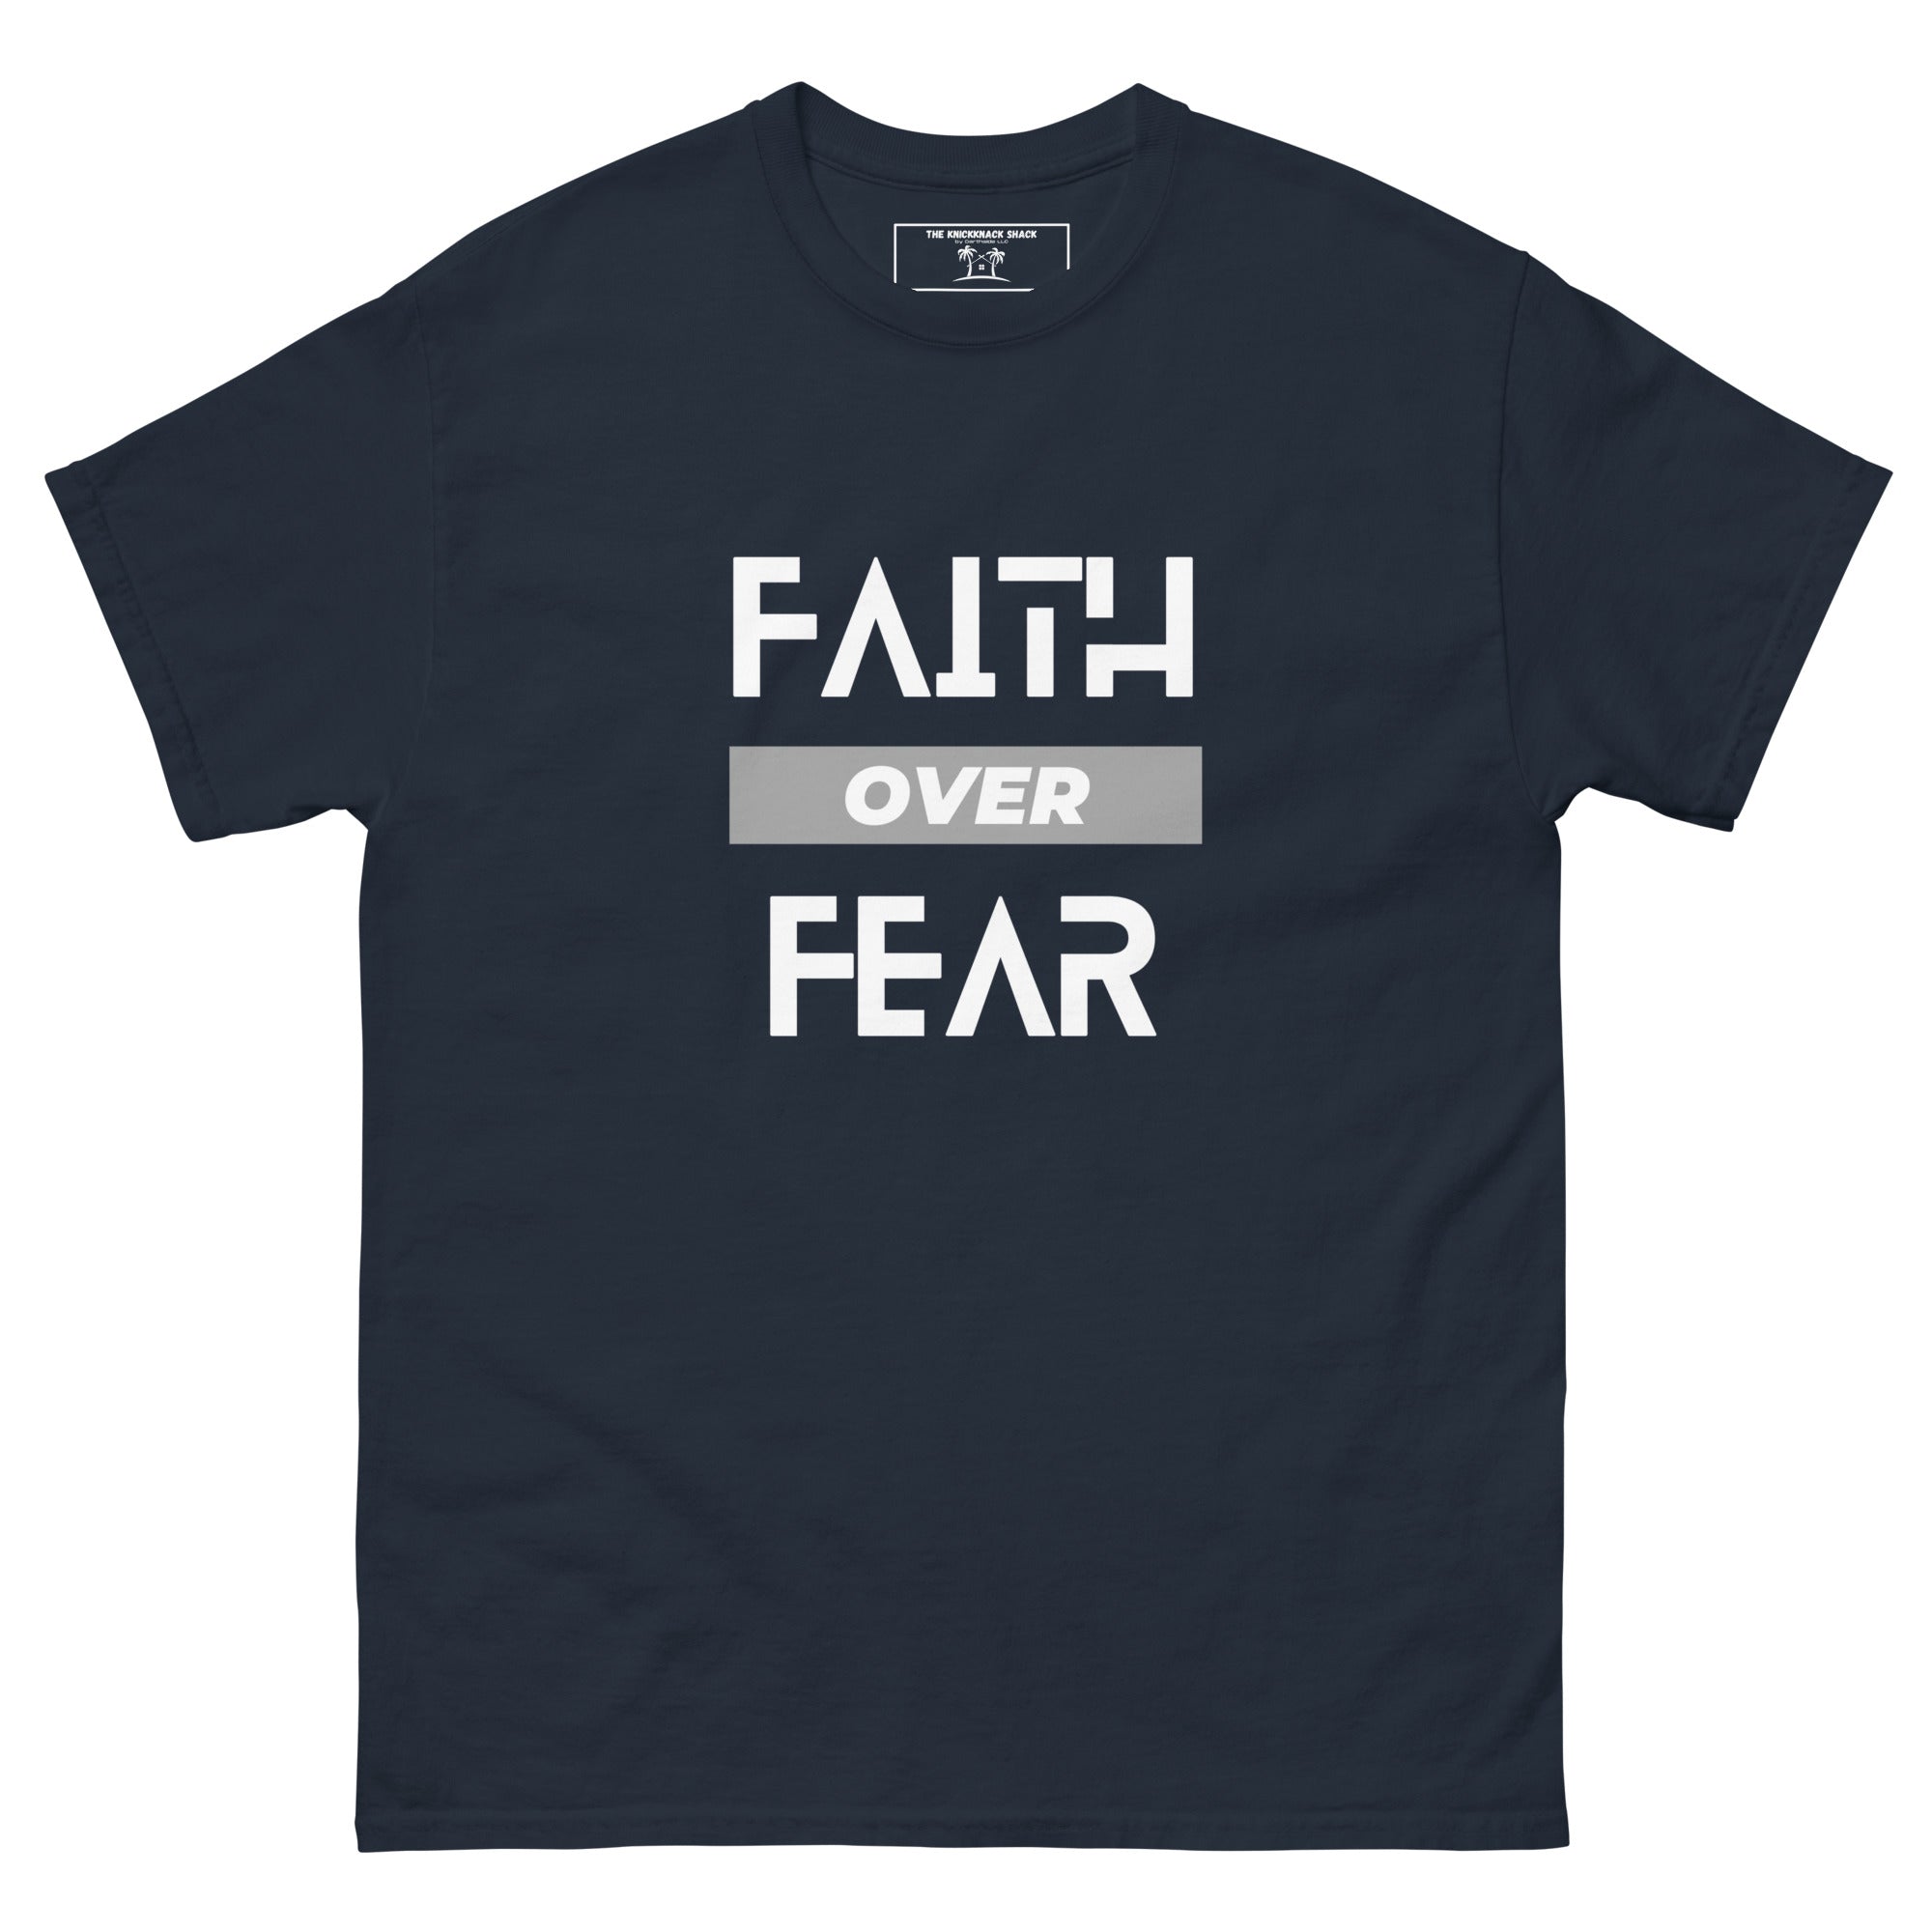 Classic Tee - Faith Over Fear (Dark Colors)